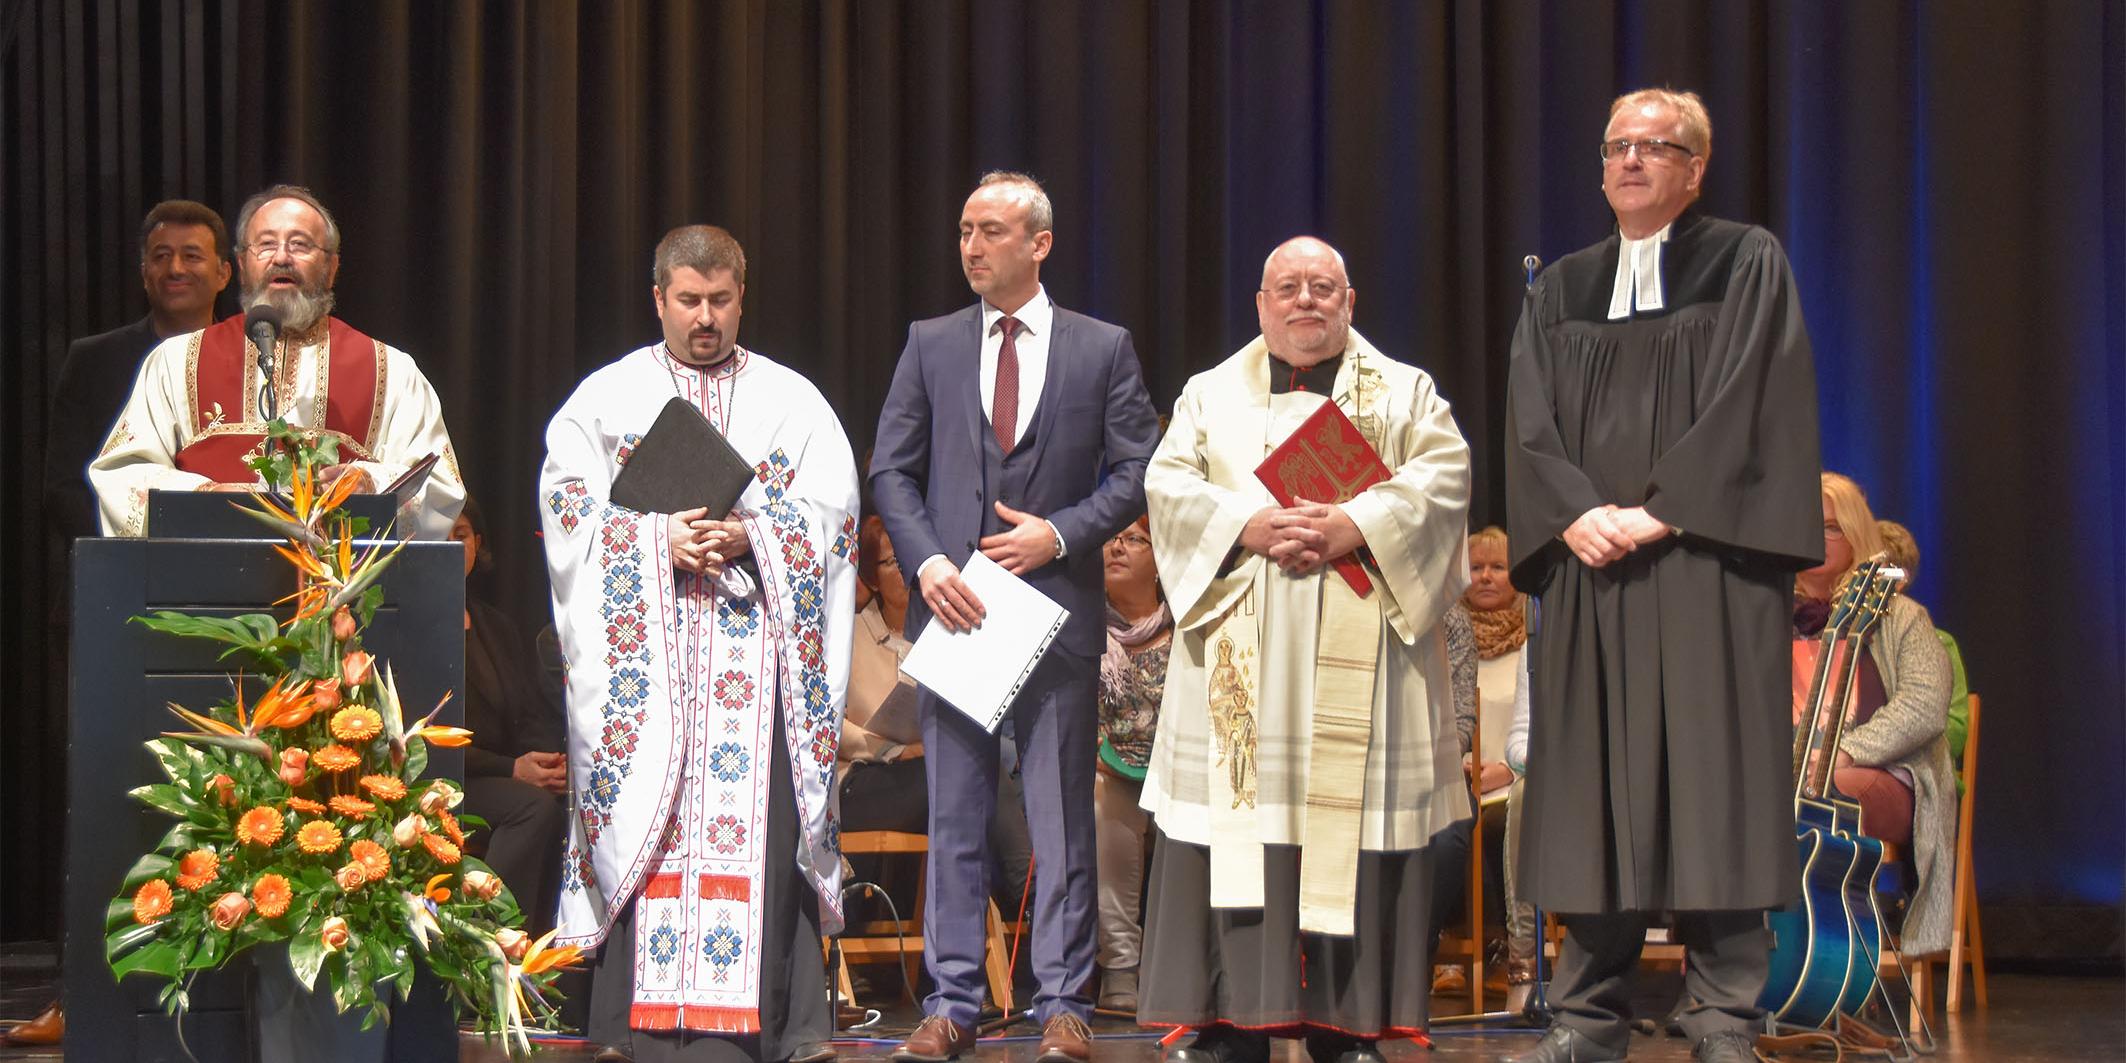 Vertreter der verschiedenen Religionen trafen sich am Sonntag zum gemeinsamen Gebet für den Frieden in Lebach